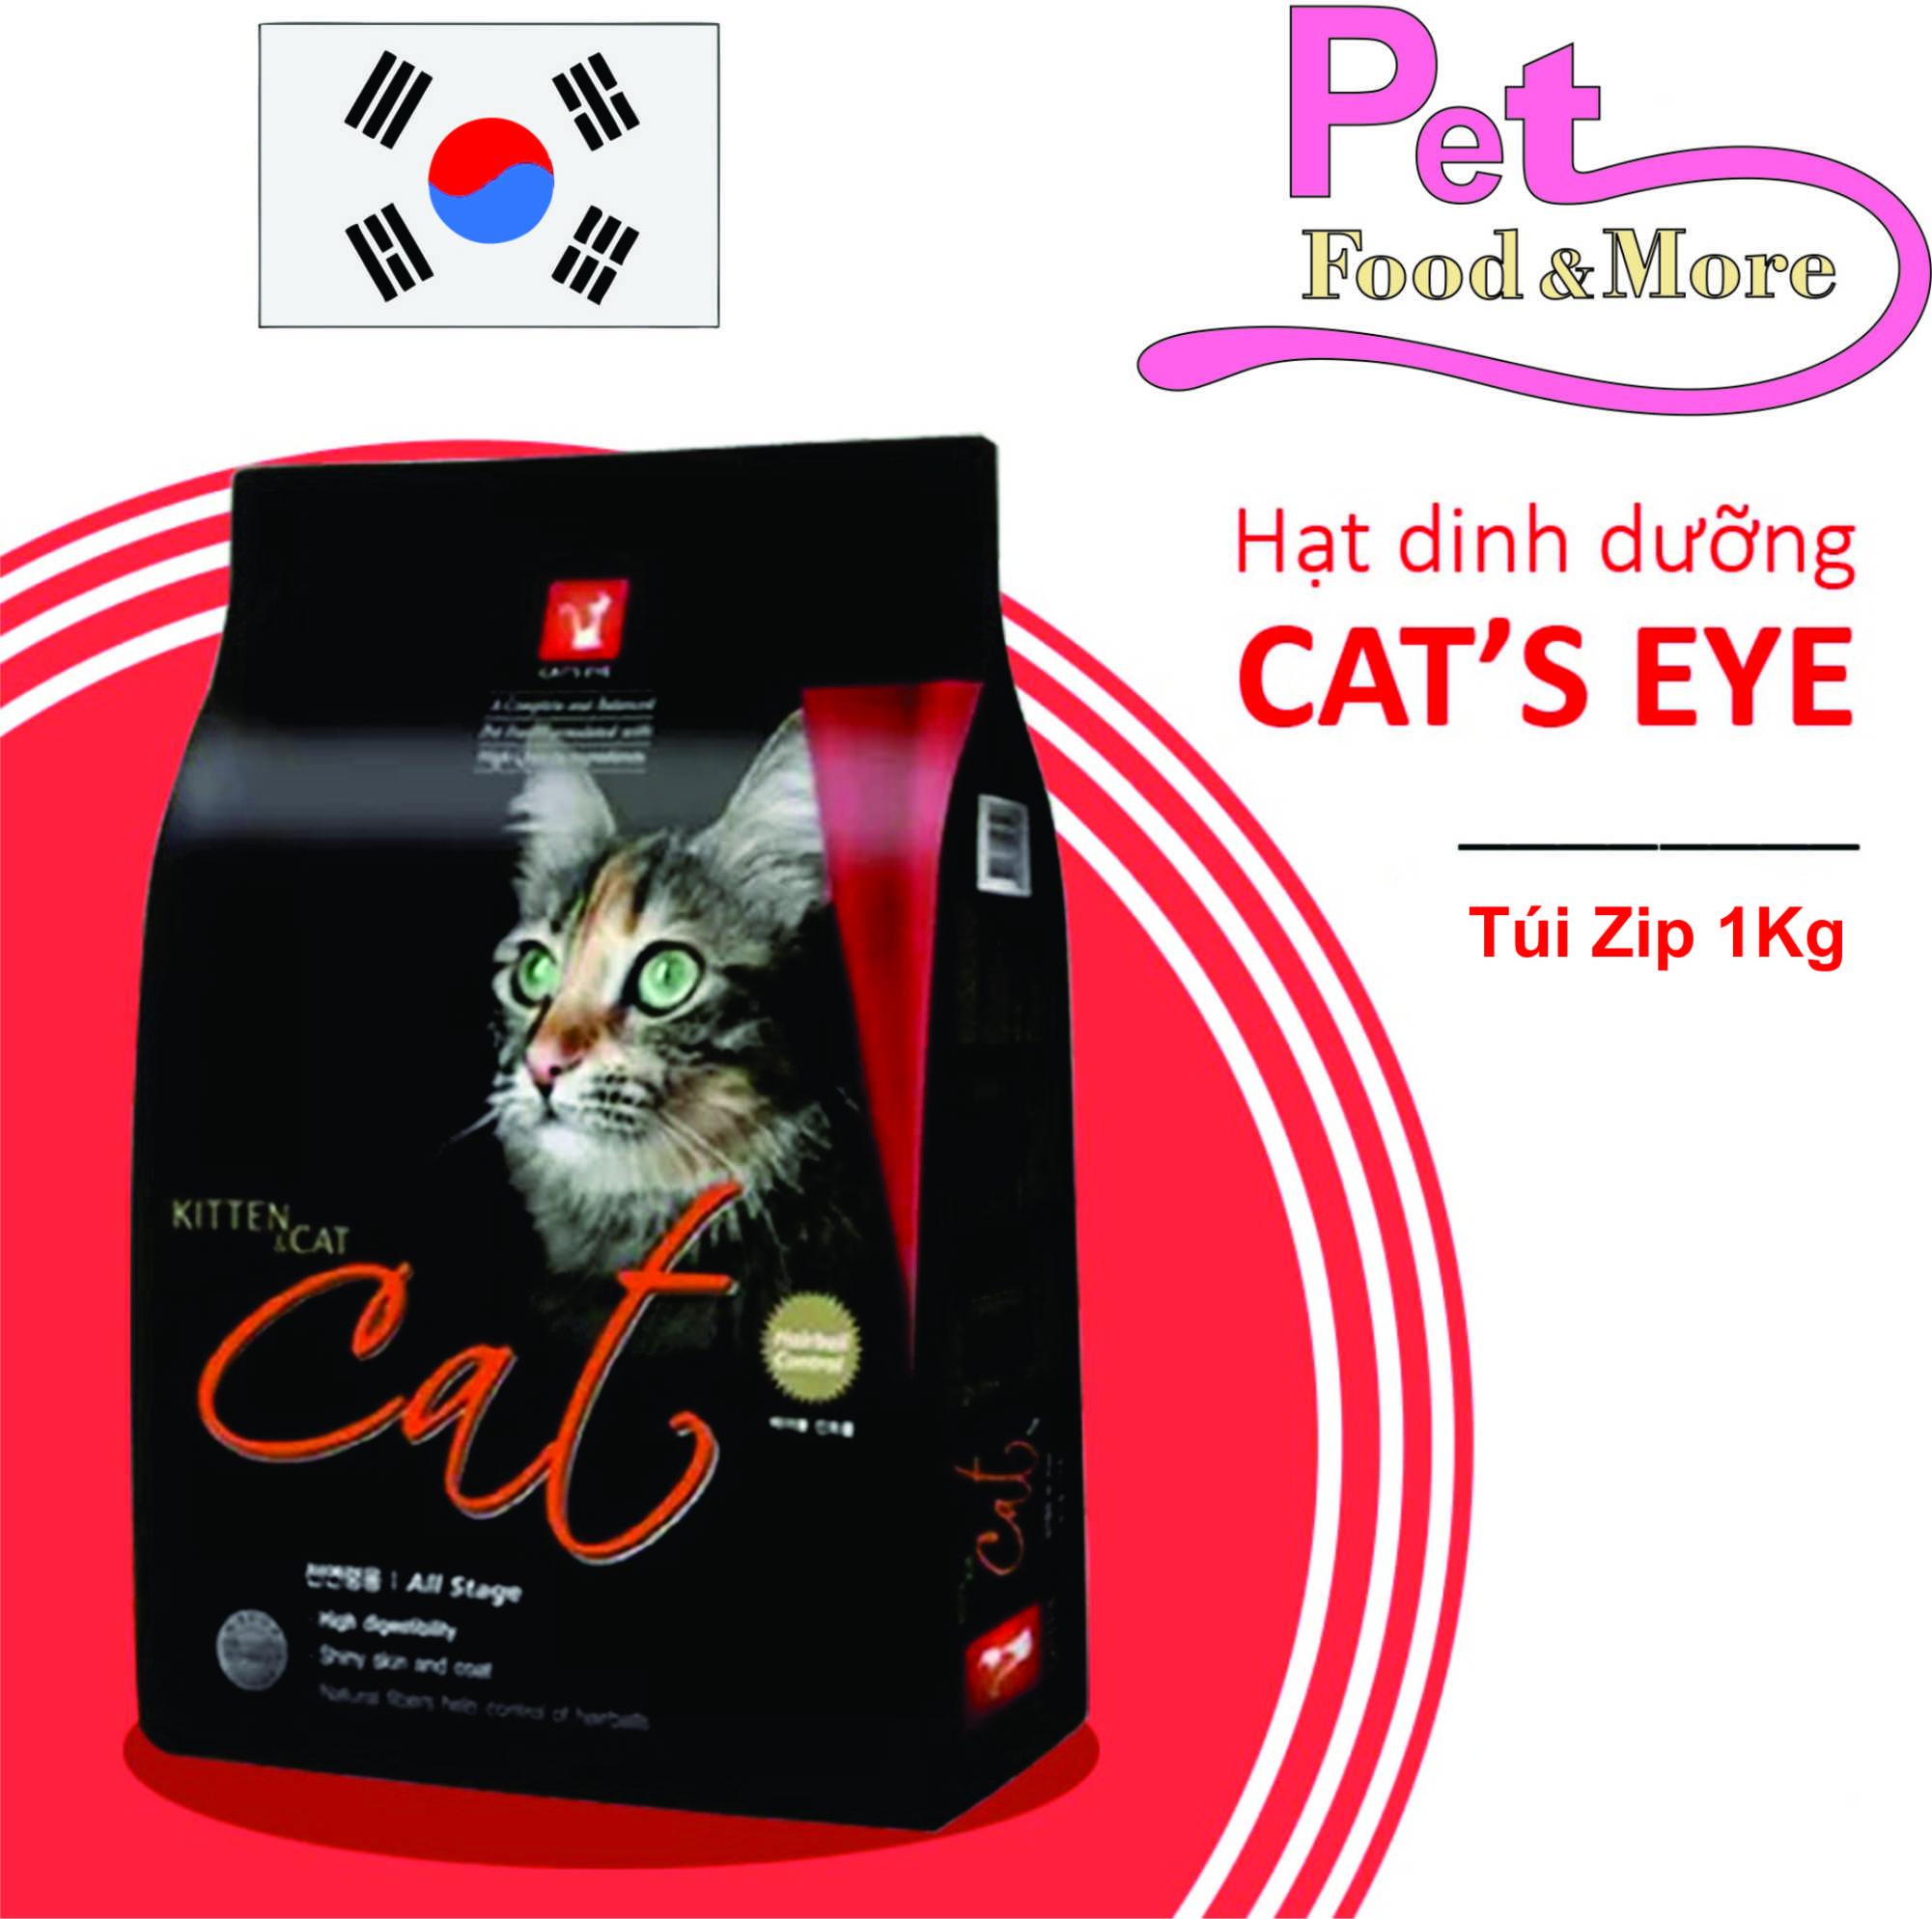 Thức Ăn Hạt Khô Cho Mèo CatEye Túi Zip 1Kg